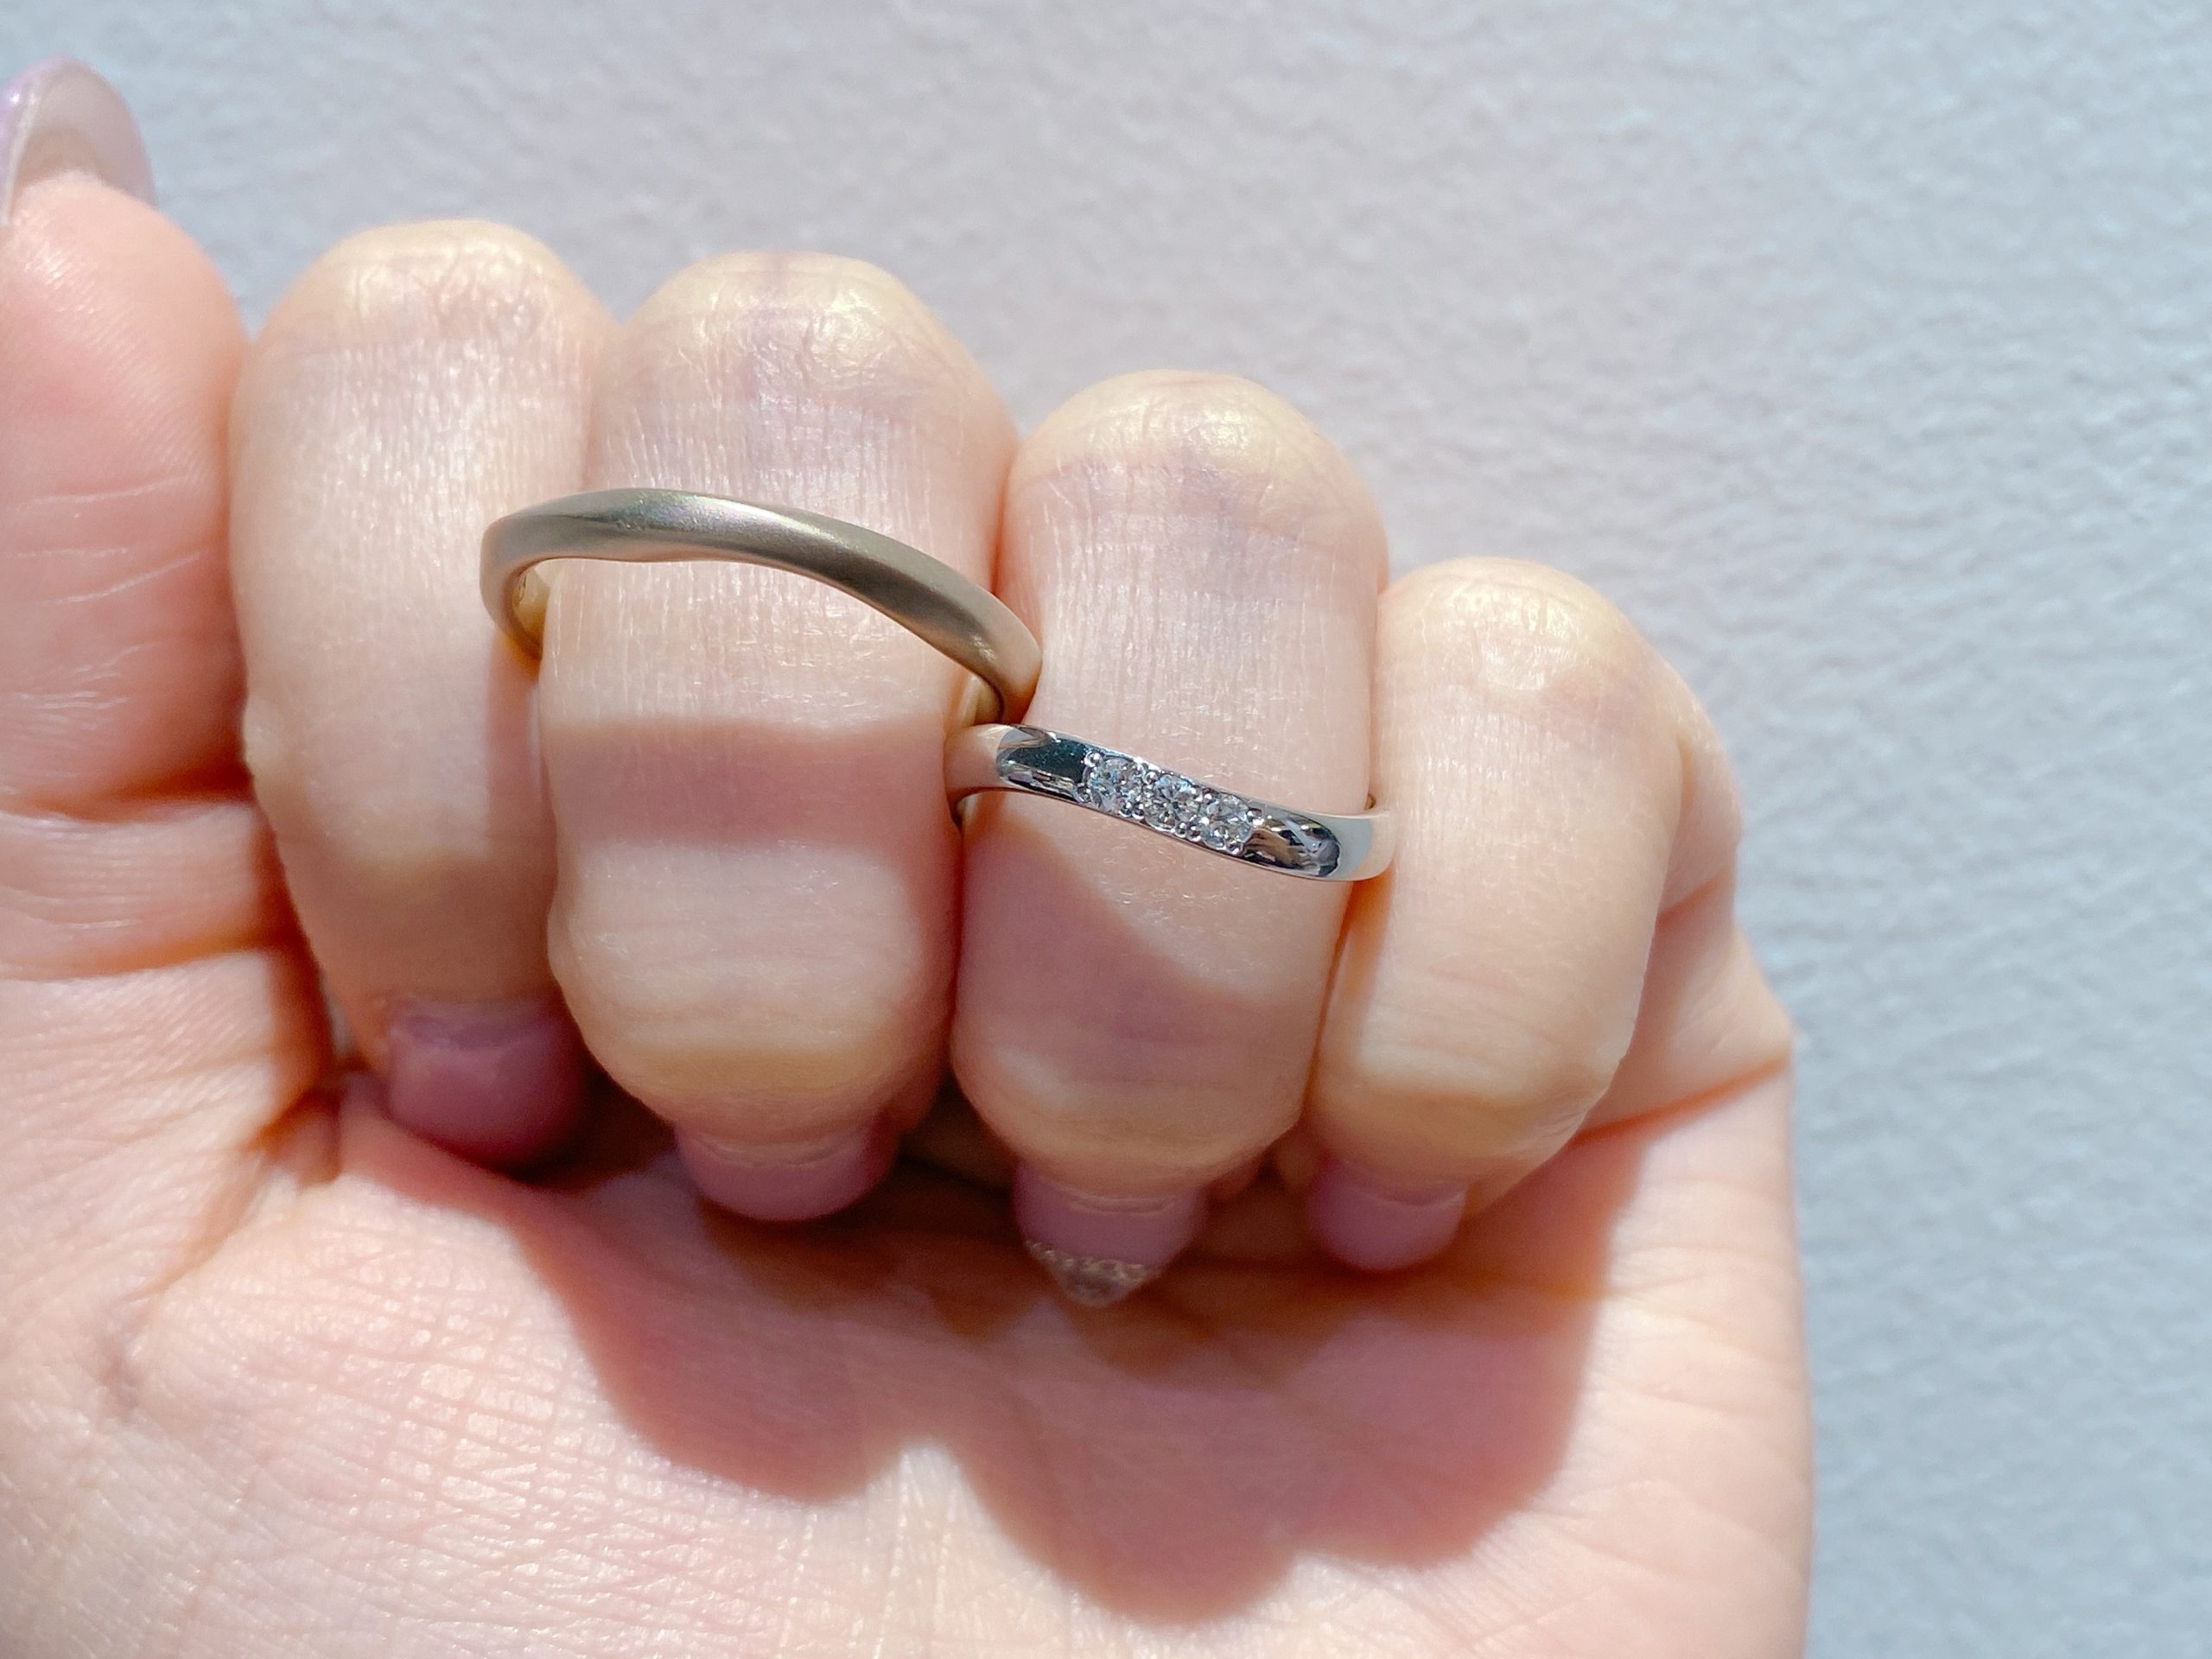 福井市ベルで人気のオクターヴの結婚指輪